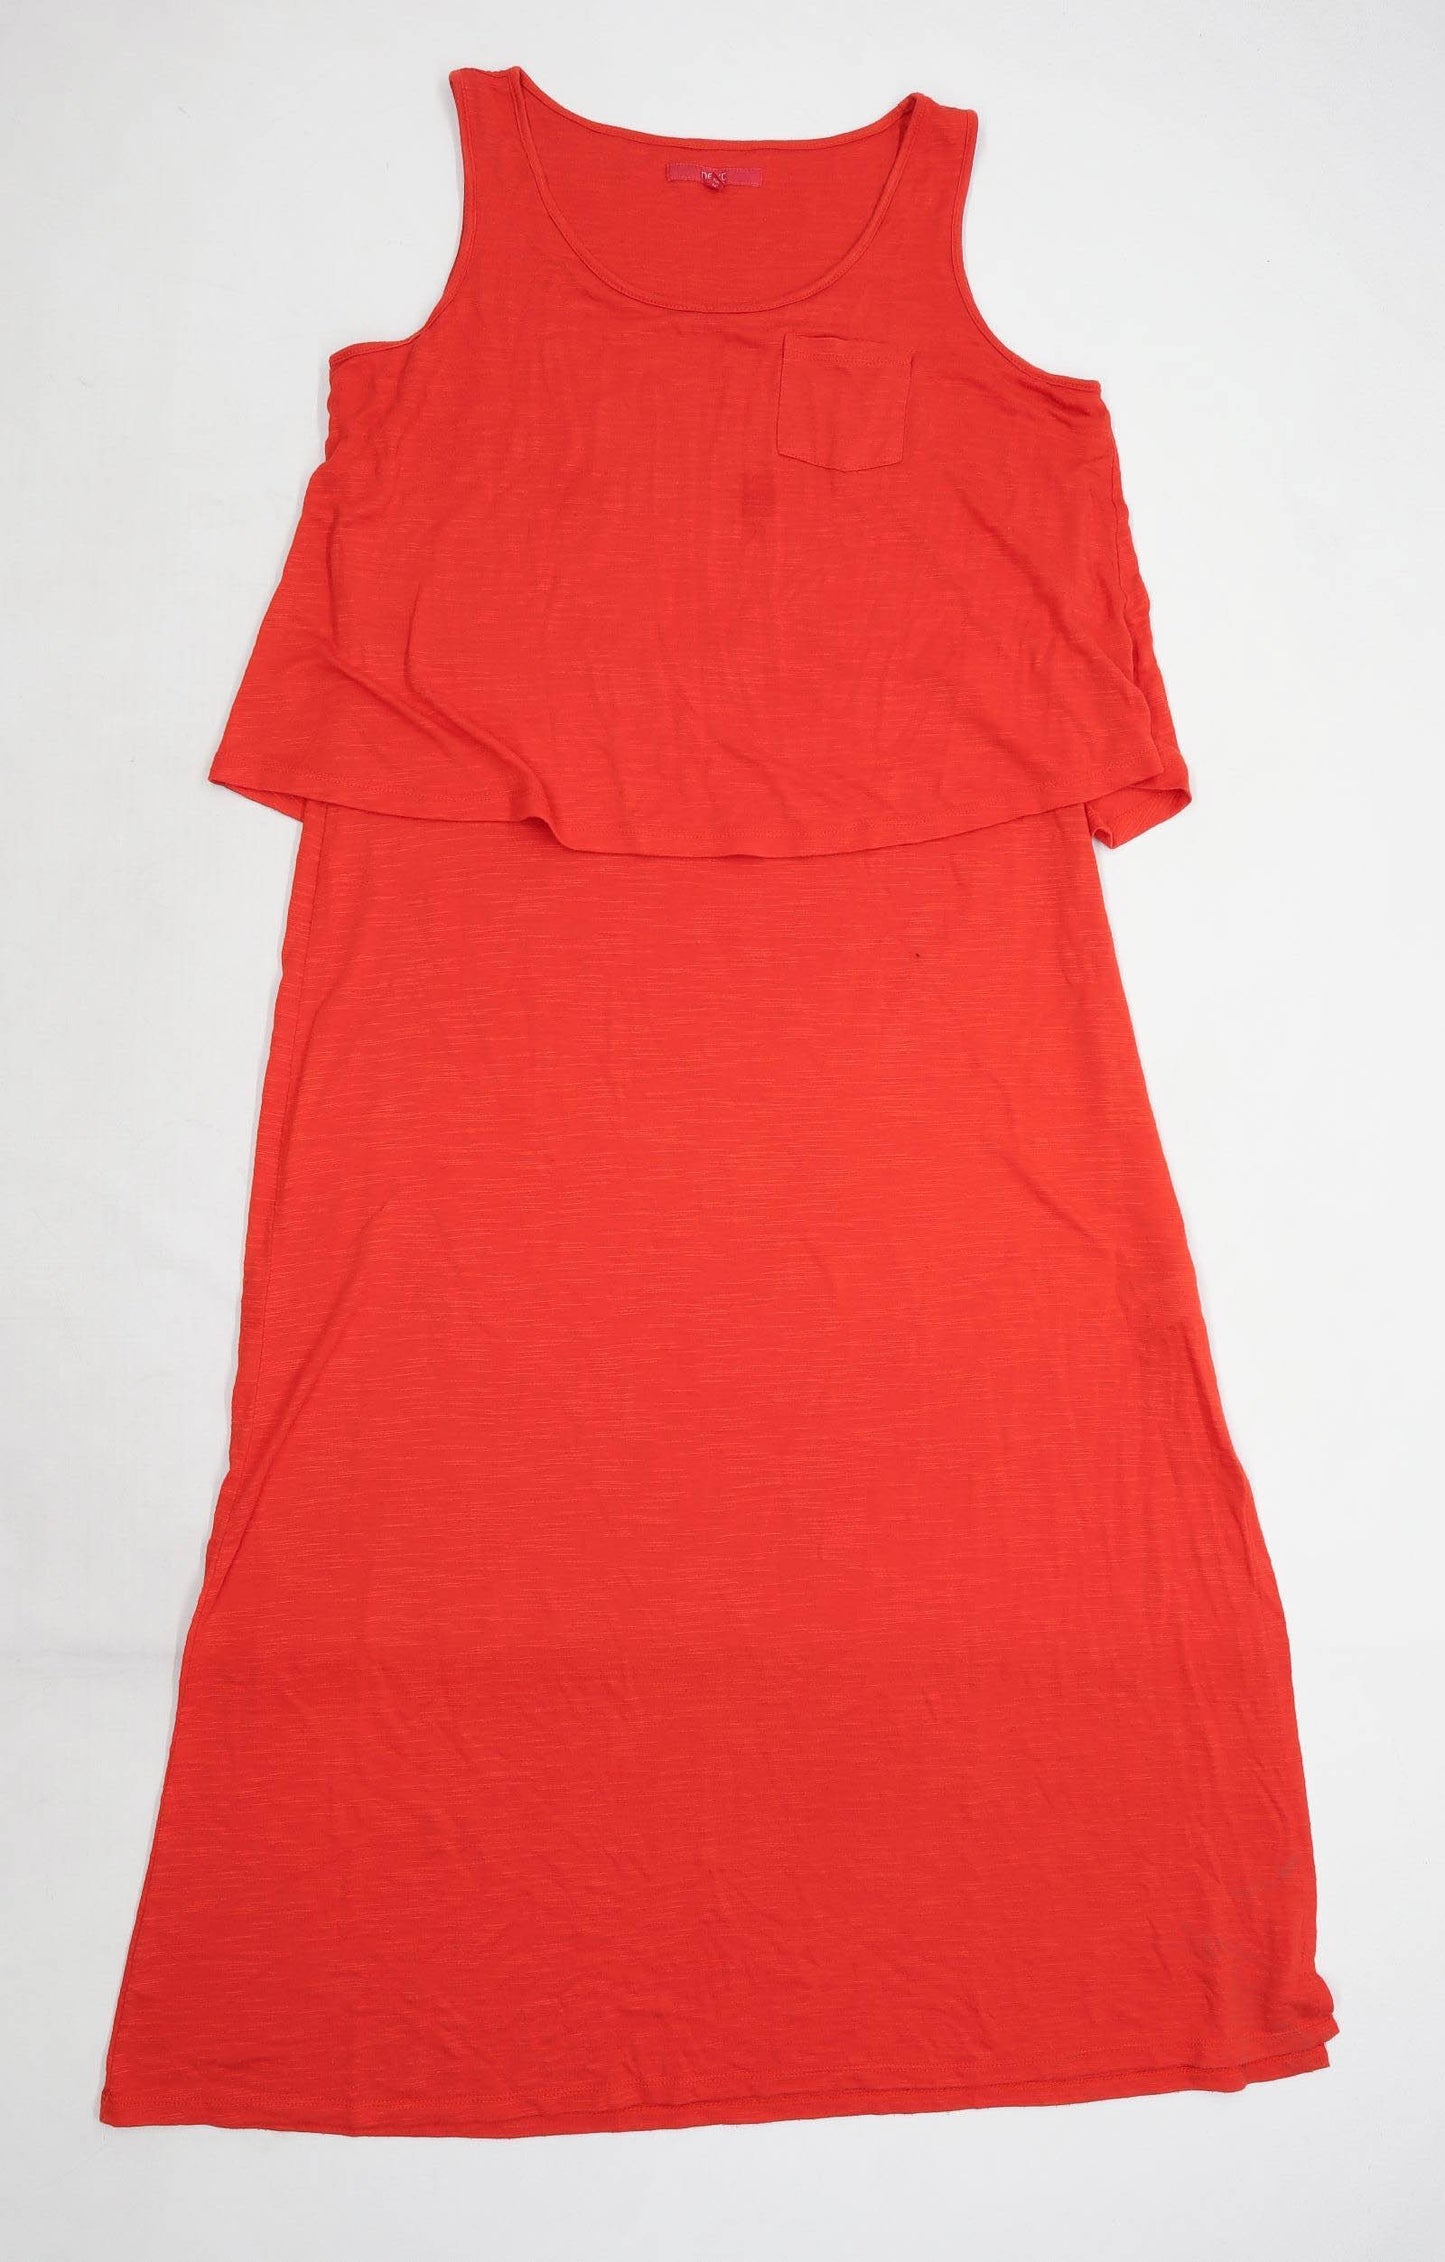 Next Womens Size 16 Red Maxi Dress (Regular)